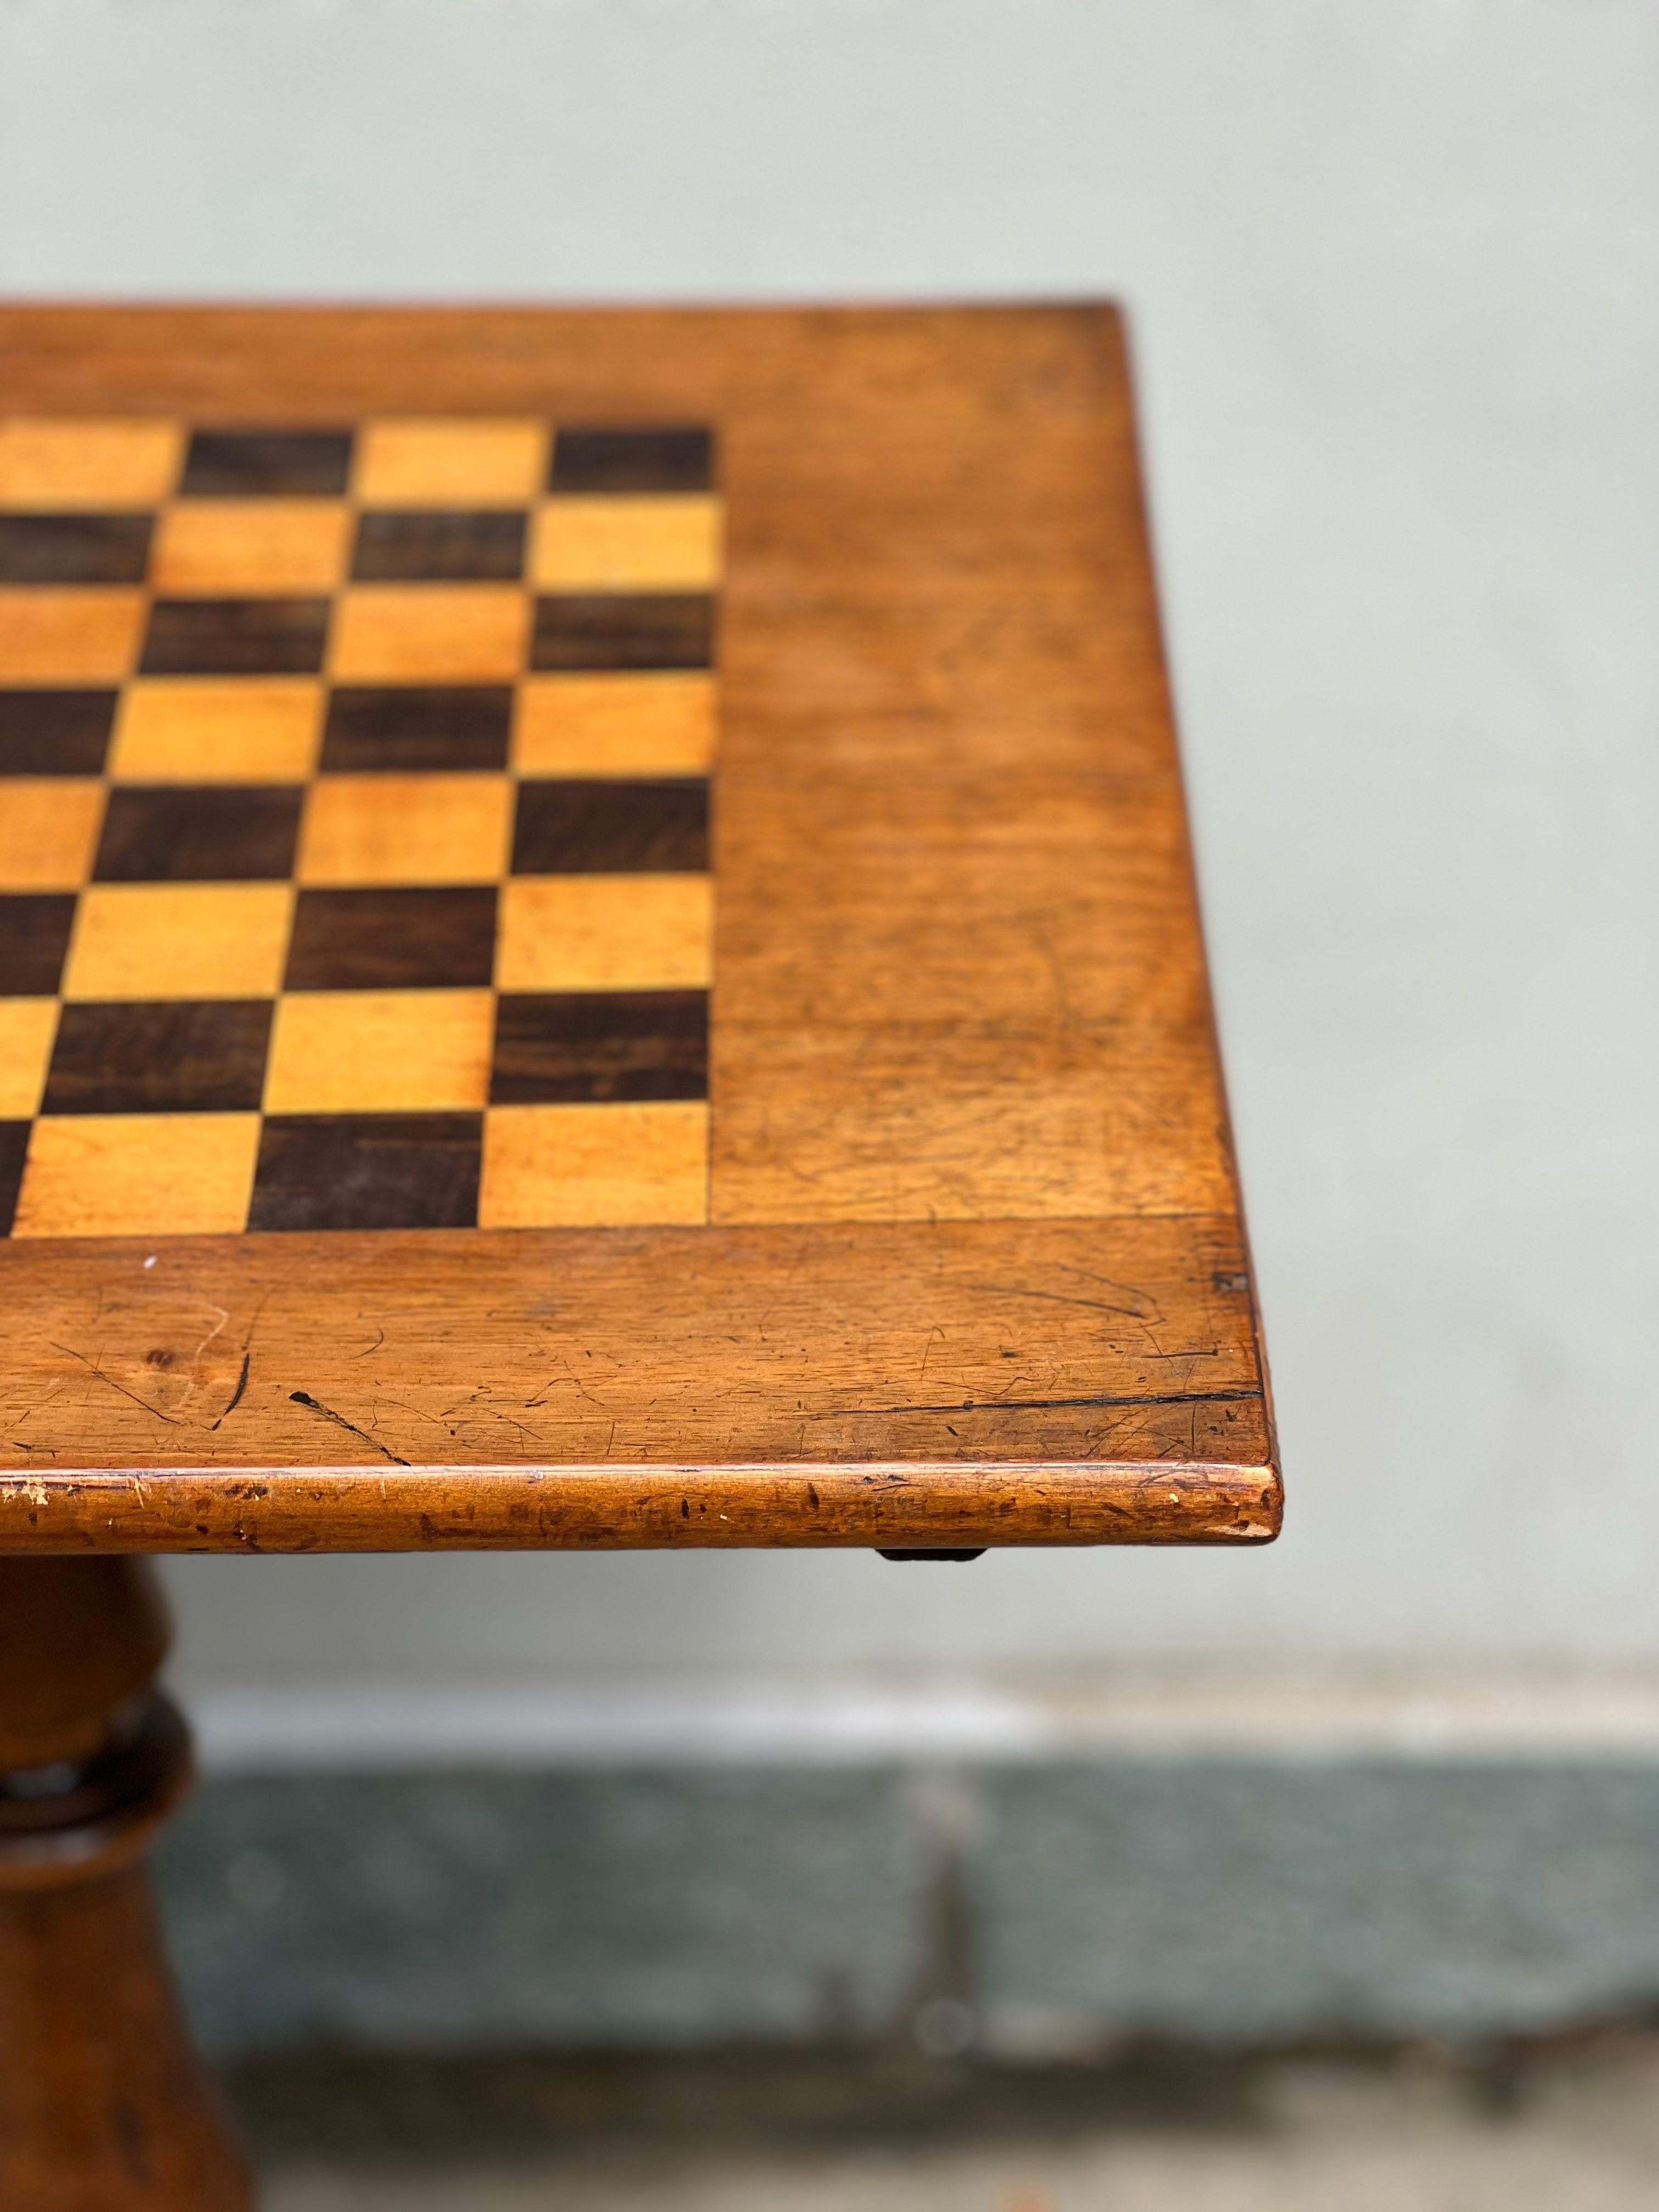 Descrizione : 
tavolino da gioco in legno 

Origini : 
Italie

Période de production : 
19 secolo 



Condizioni : ottime

Misure (cm) :
Altitude de 78
Larghezza 52
